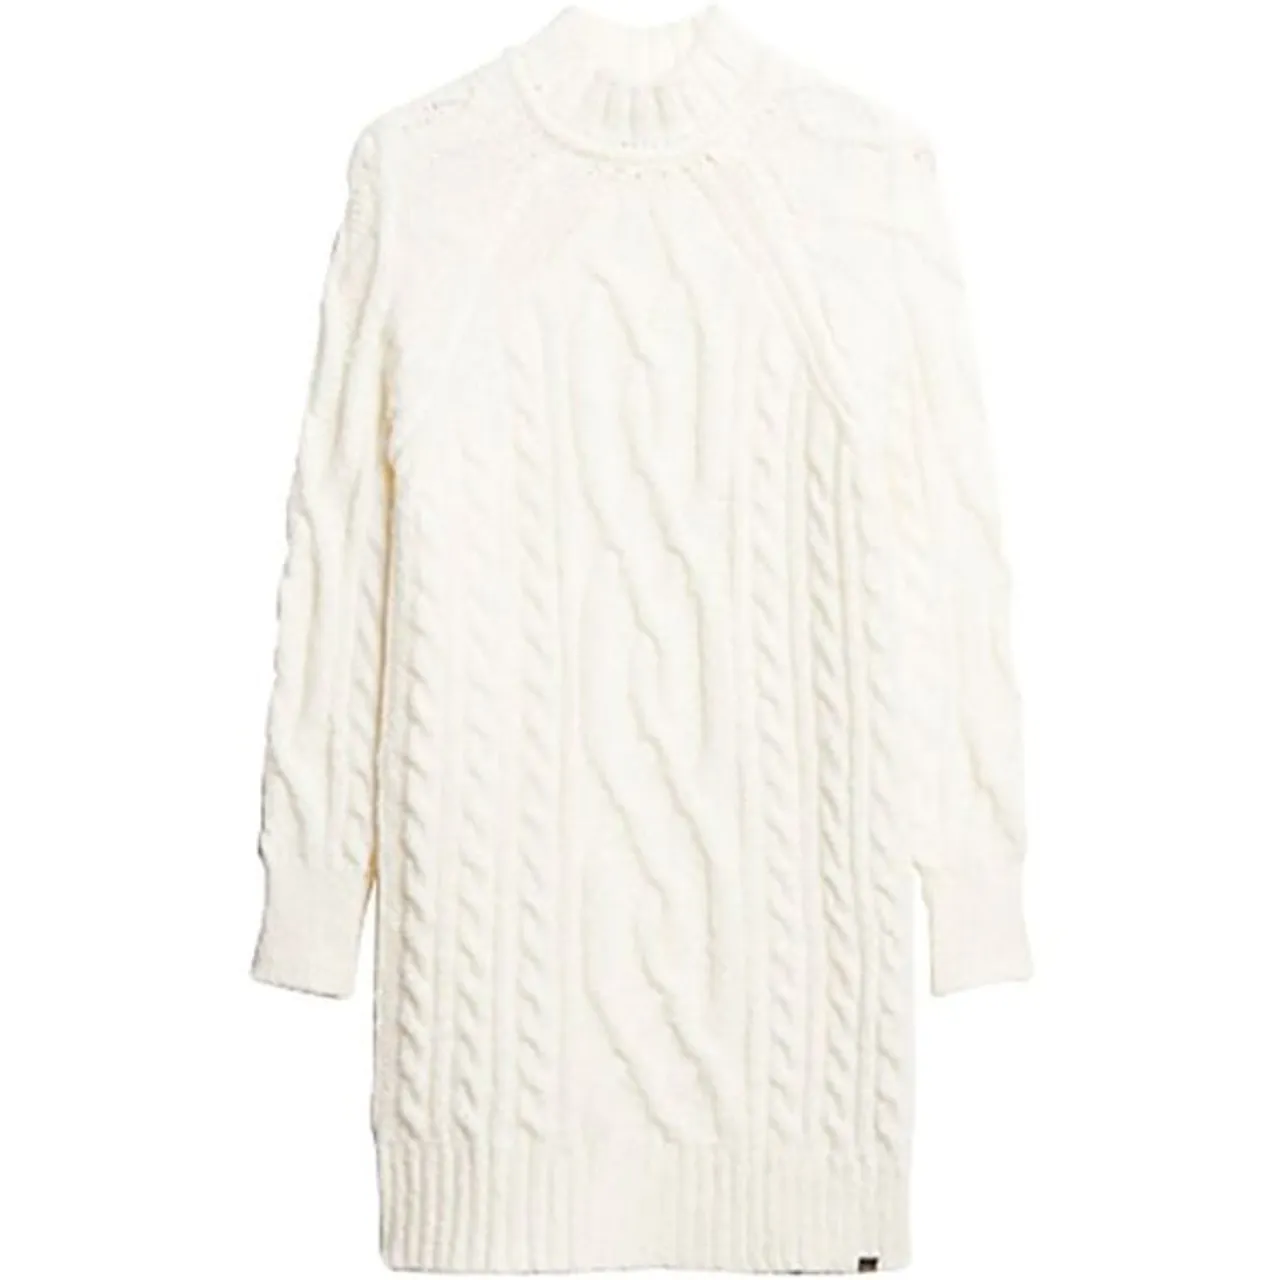 Strickkleid SUPERDRY "CABLE MOCK NECK JUMPER DRESS" Gr. M, N-Gr, weiß (off white) Damen Kleider Langarm